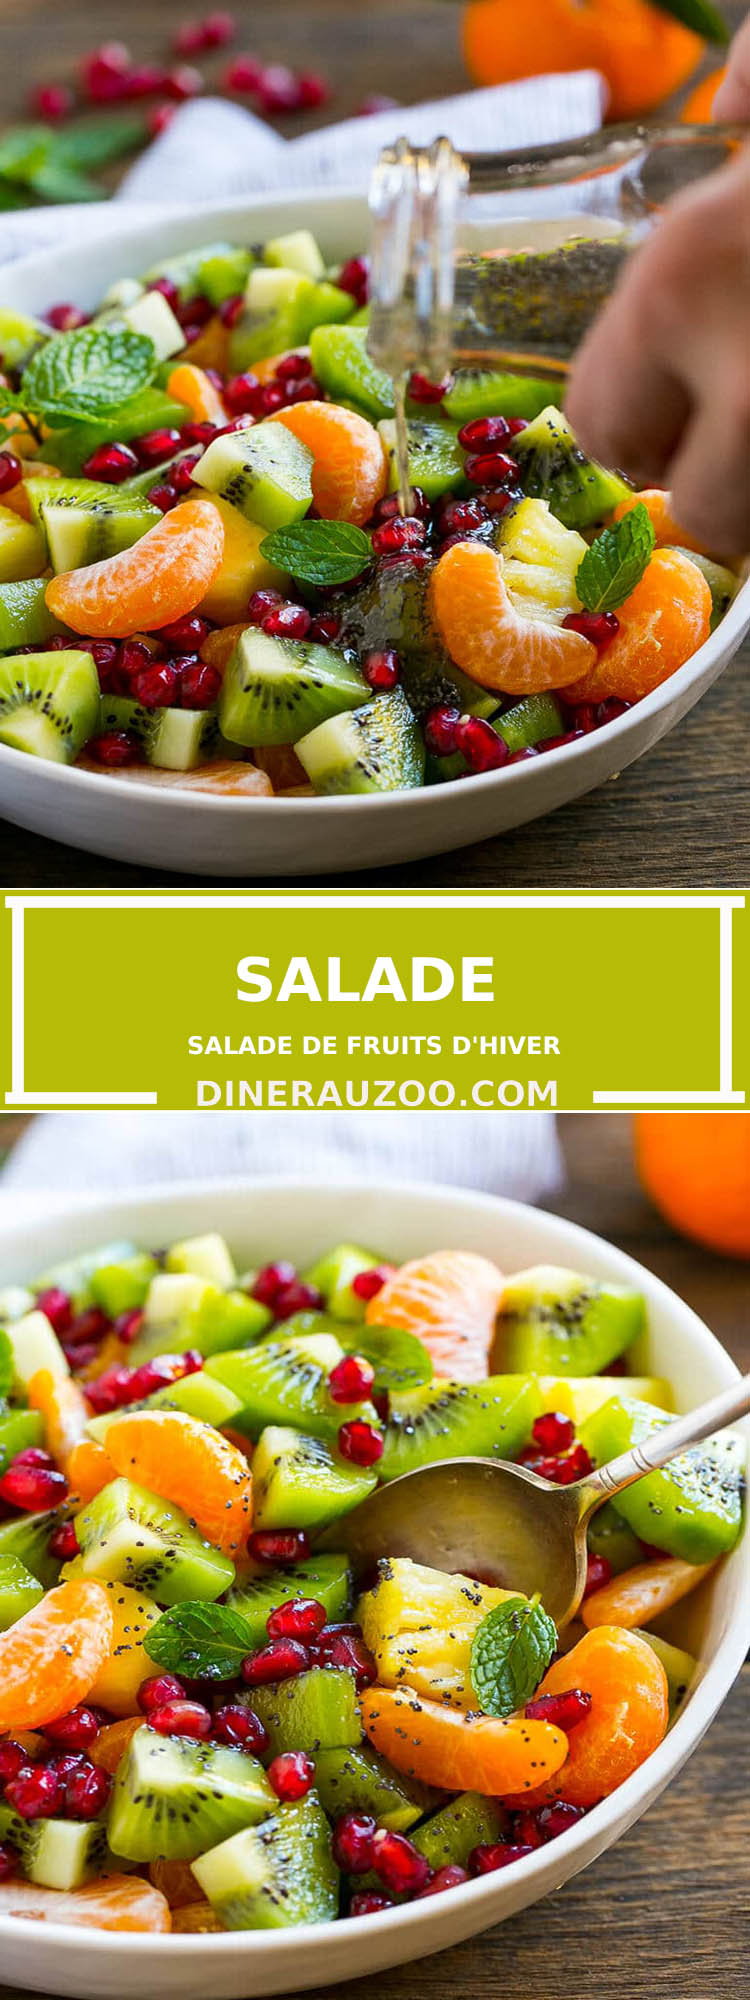 Salade de fruits d hiver1